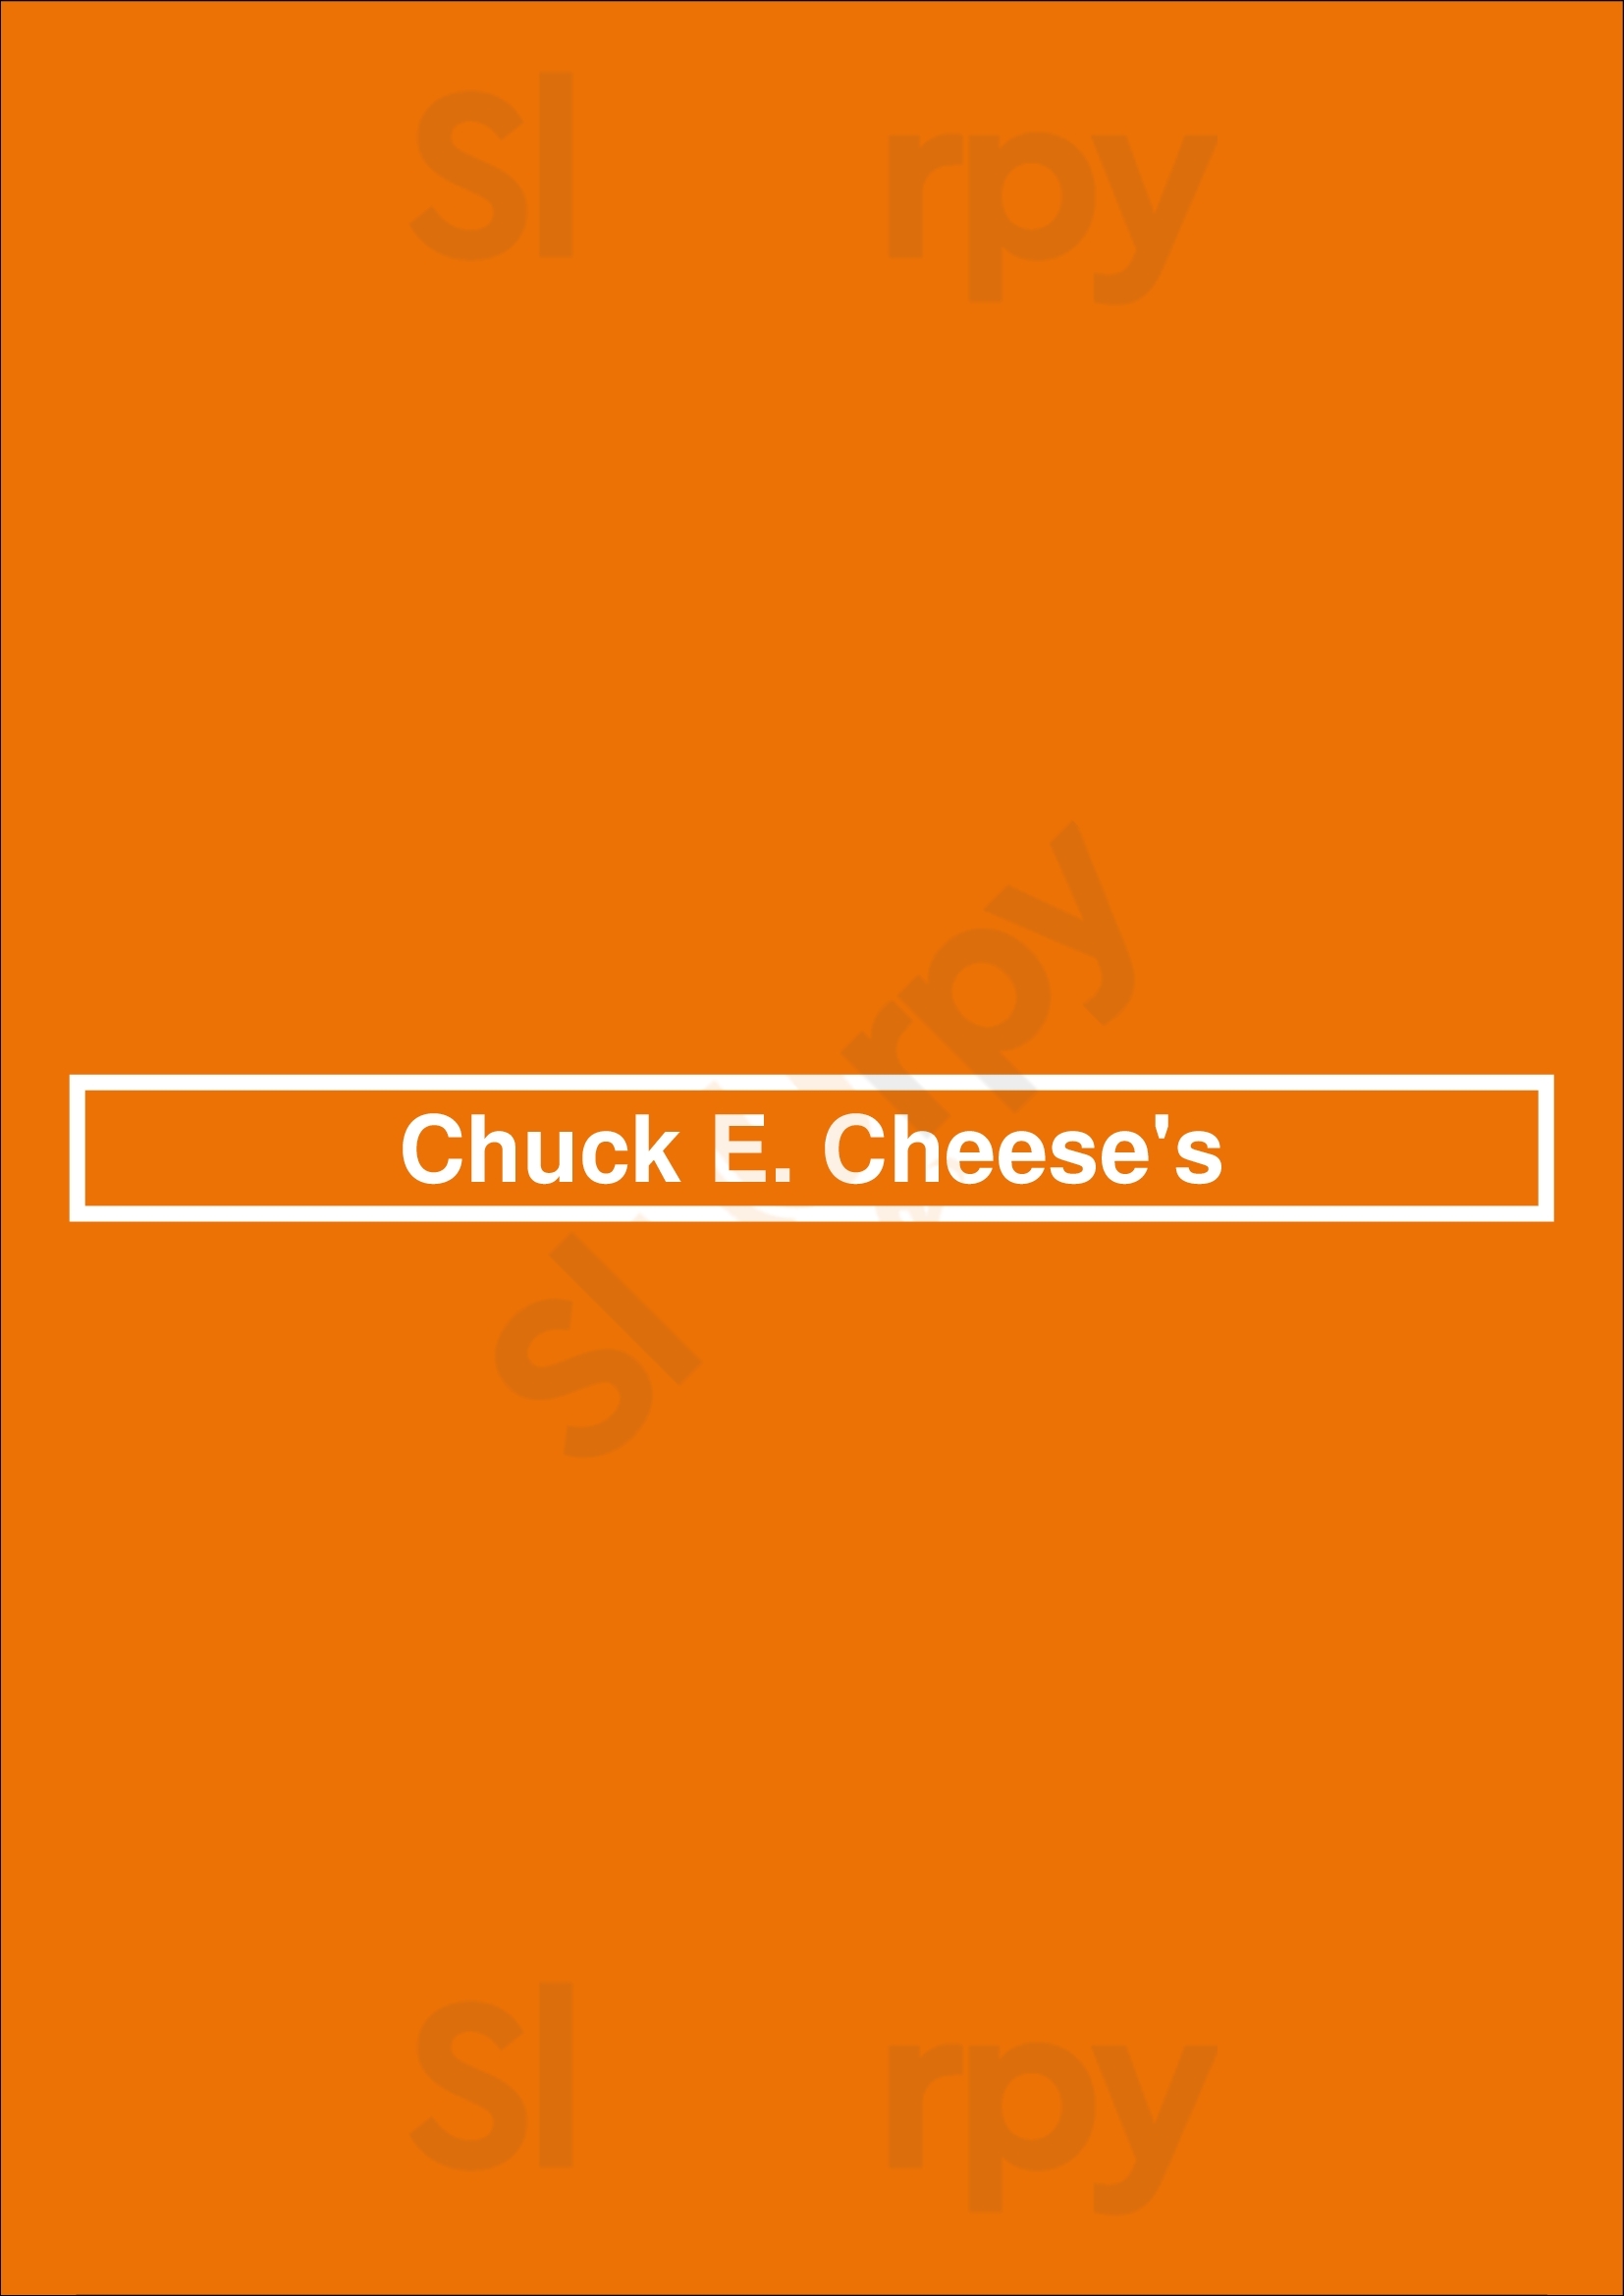 Chuck E. Cheese Huntington Beach Menu - 1